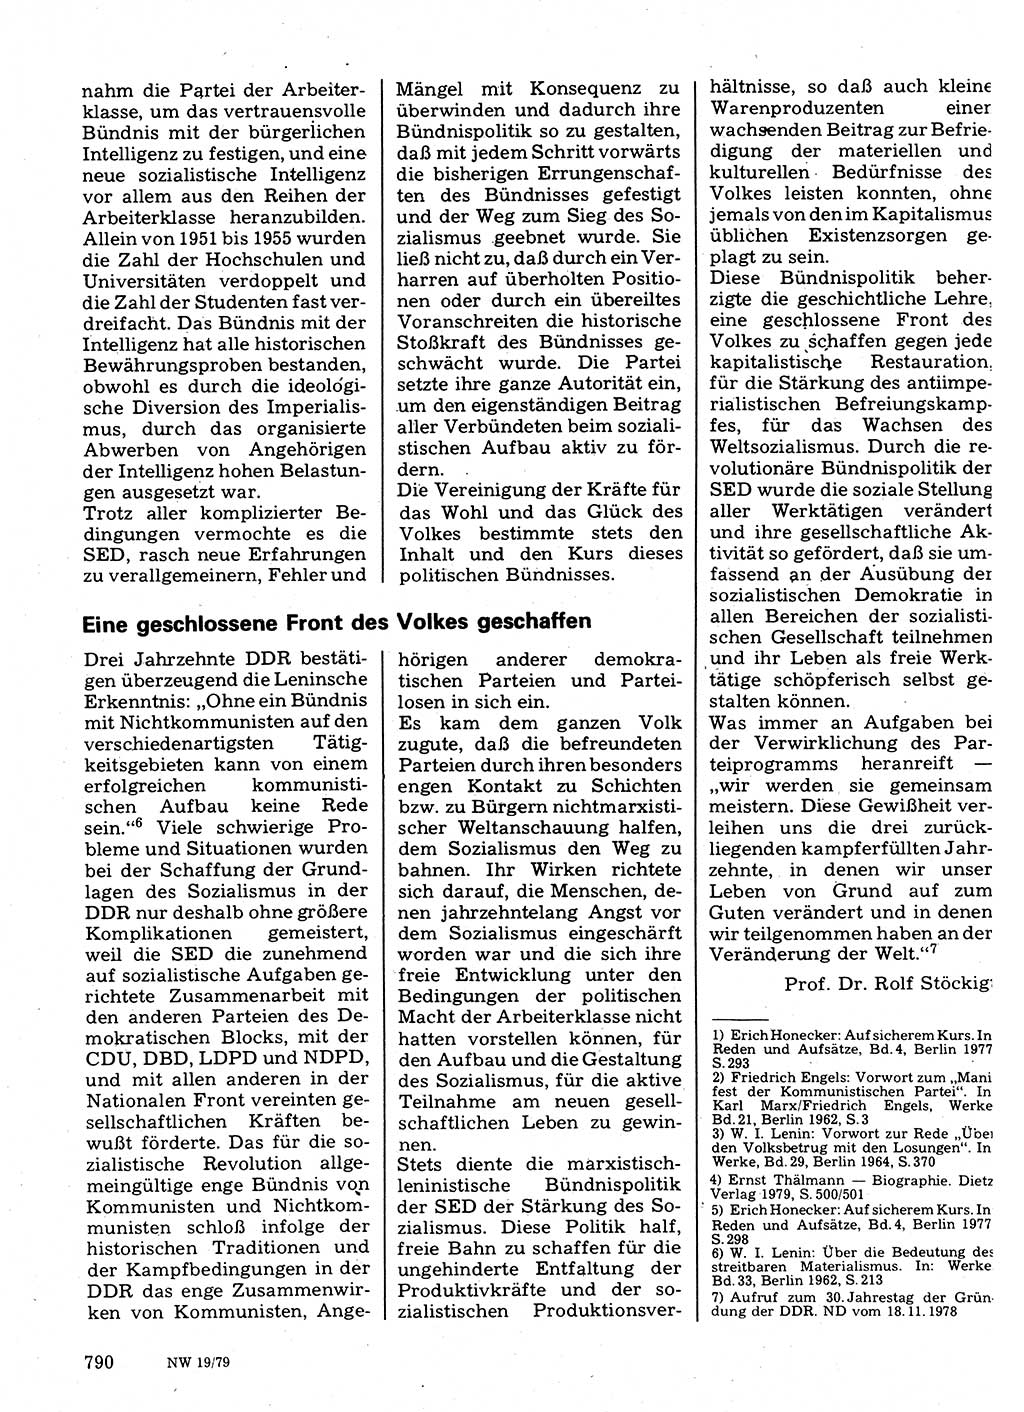 Neuer Weg (NW), Organ des Zentralkomitees (ZK) der SED (Sozialistische Einheitspartei Deutschlands) für Fragen des Parteilebens, 34. Jahrgang [Deutsche Demokratische Republik (DDR)] 1979, Seite 790 (NW ZK SED DDR 1979, S. 790)